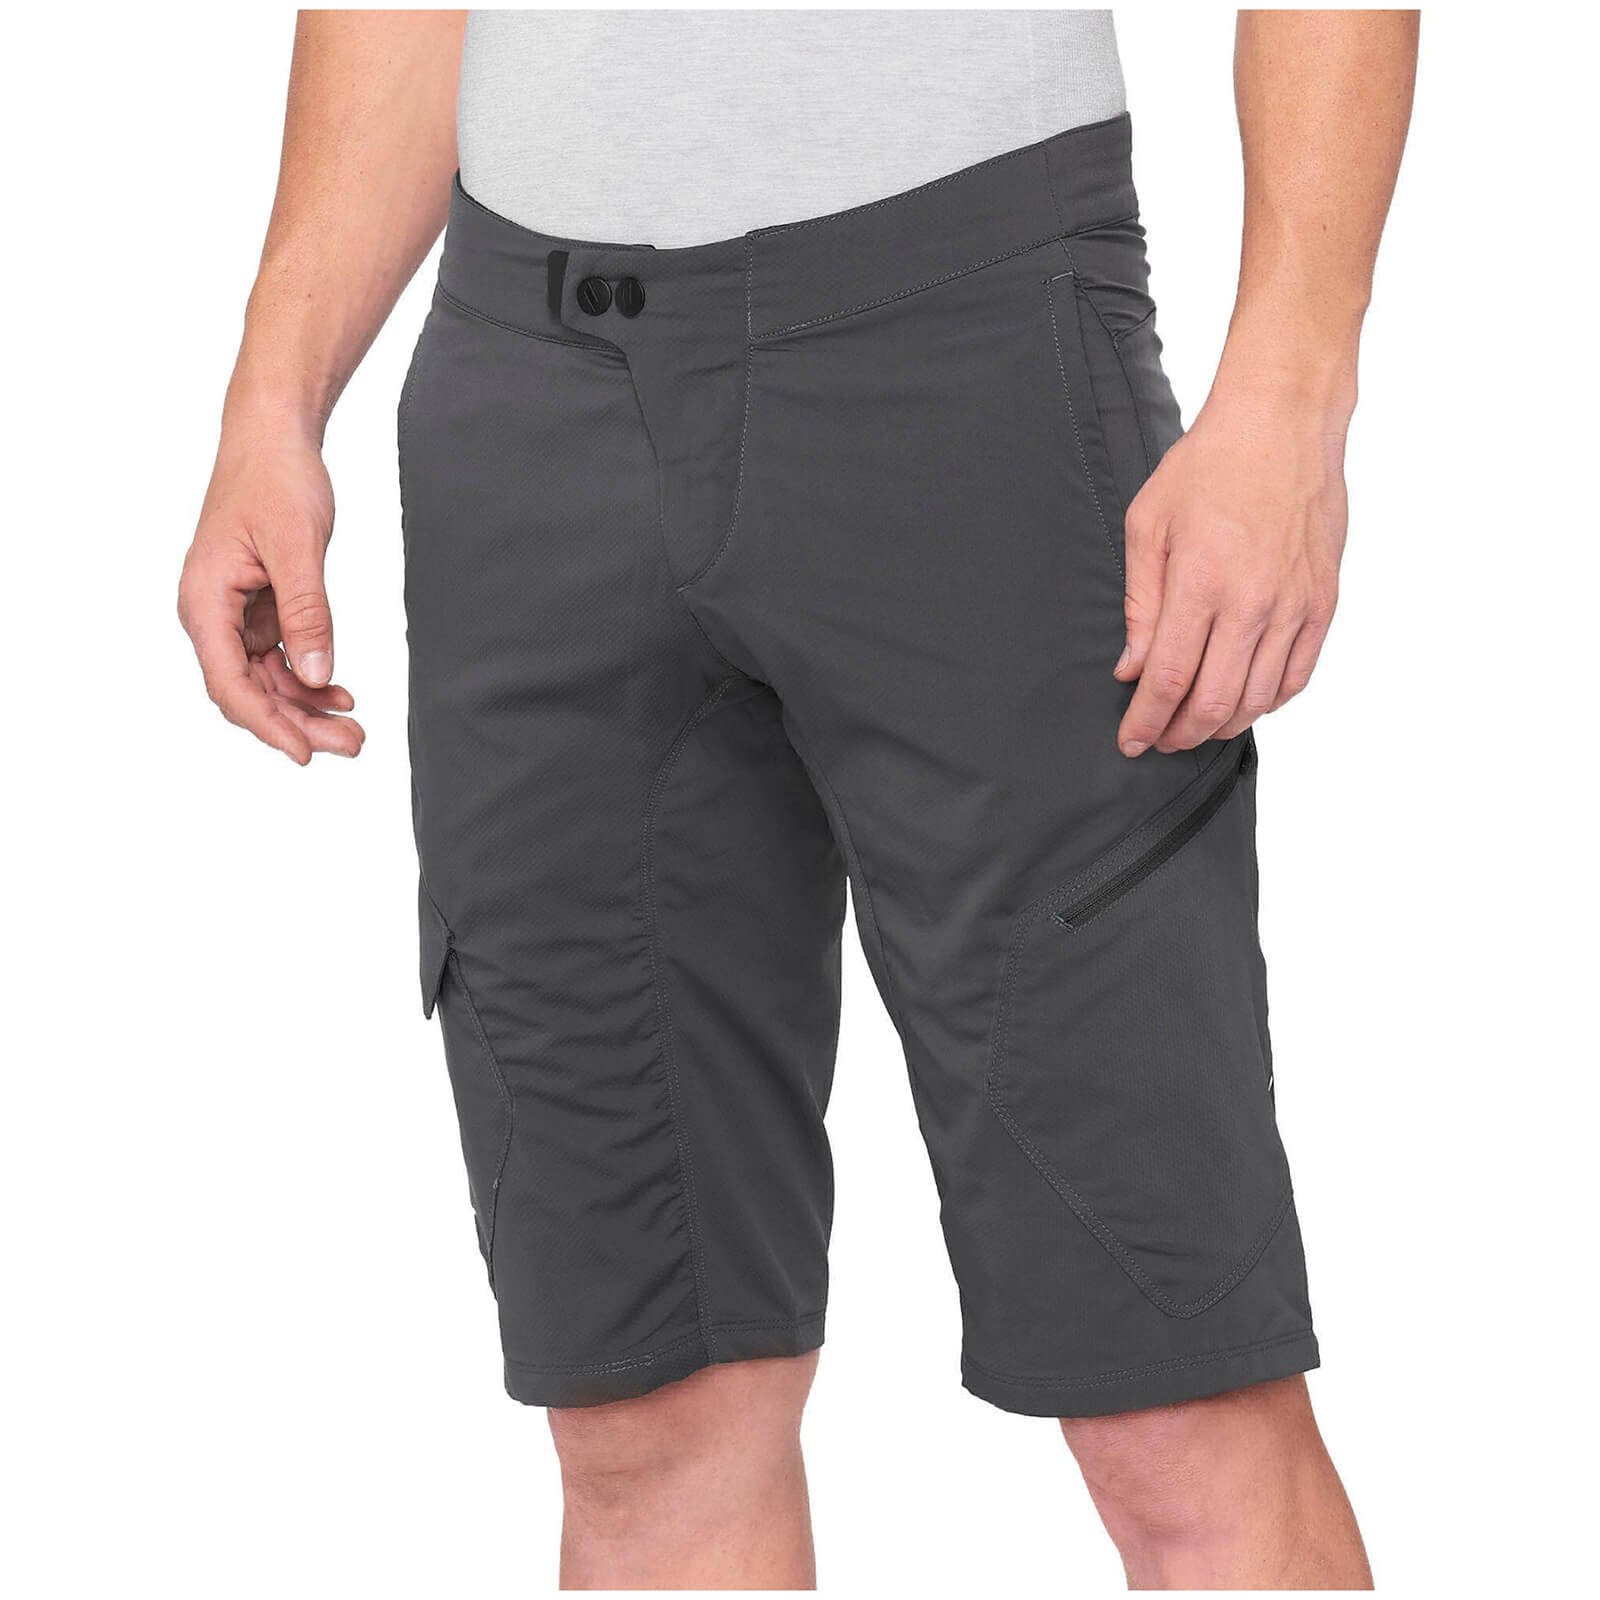 100% Ridecamp MTB Shorts - 38 - Charcoal